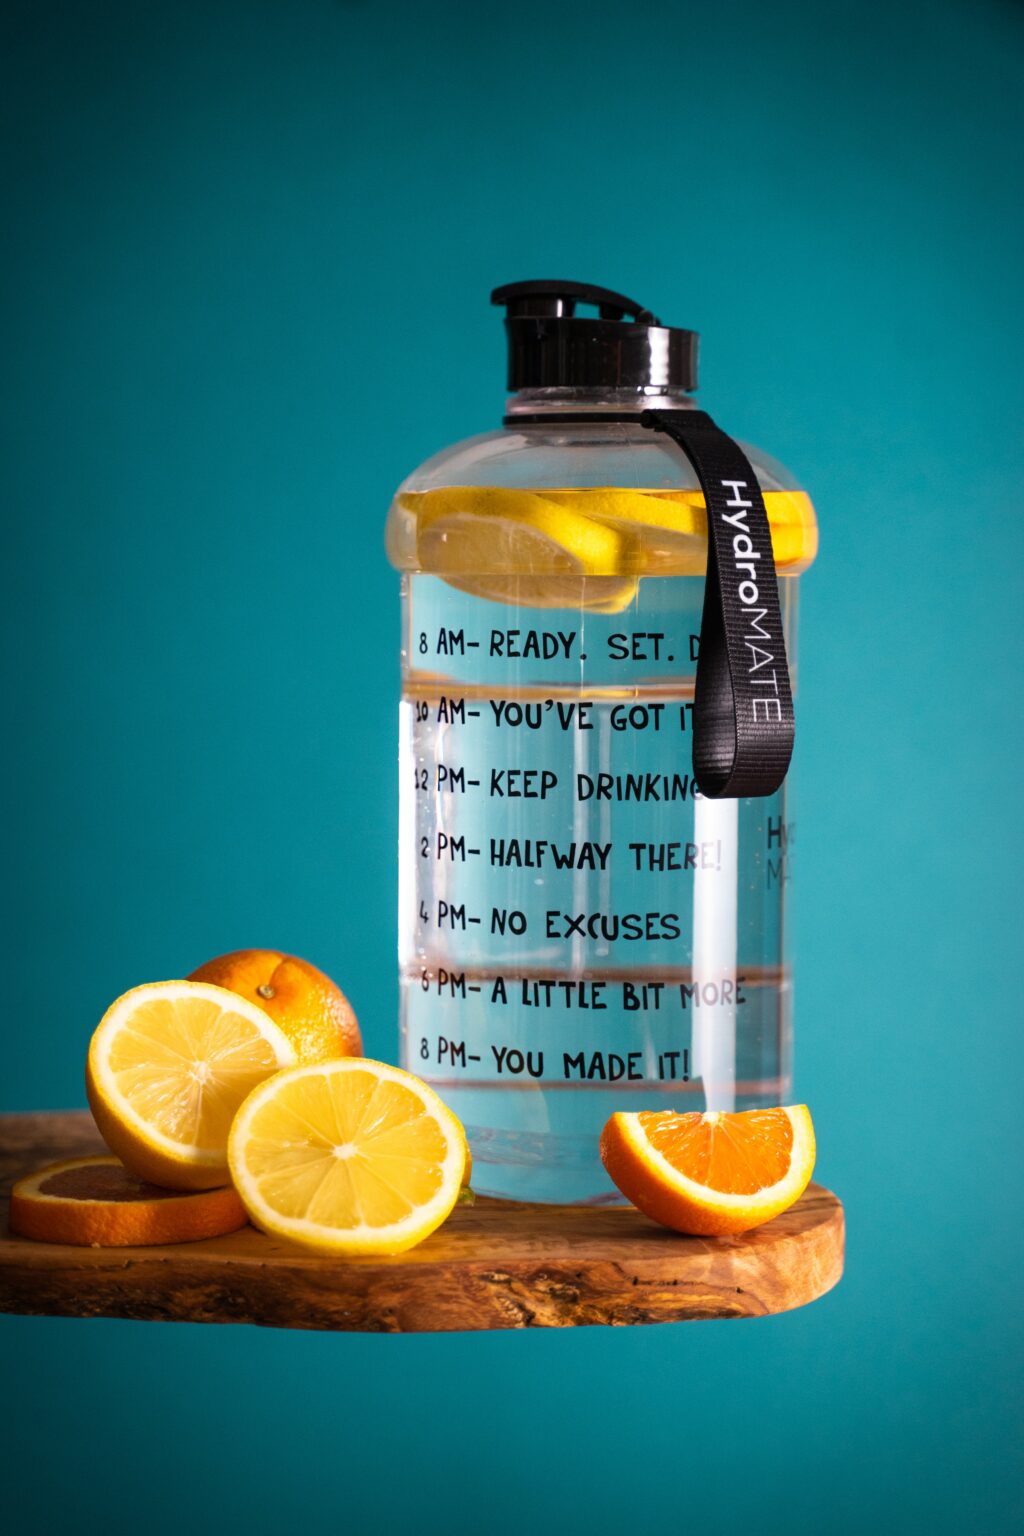 Tutup botol air dengan irisan air dan lemon